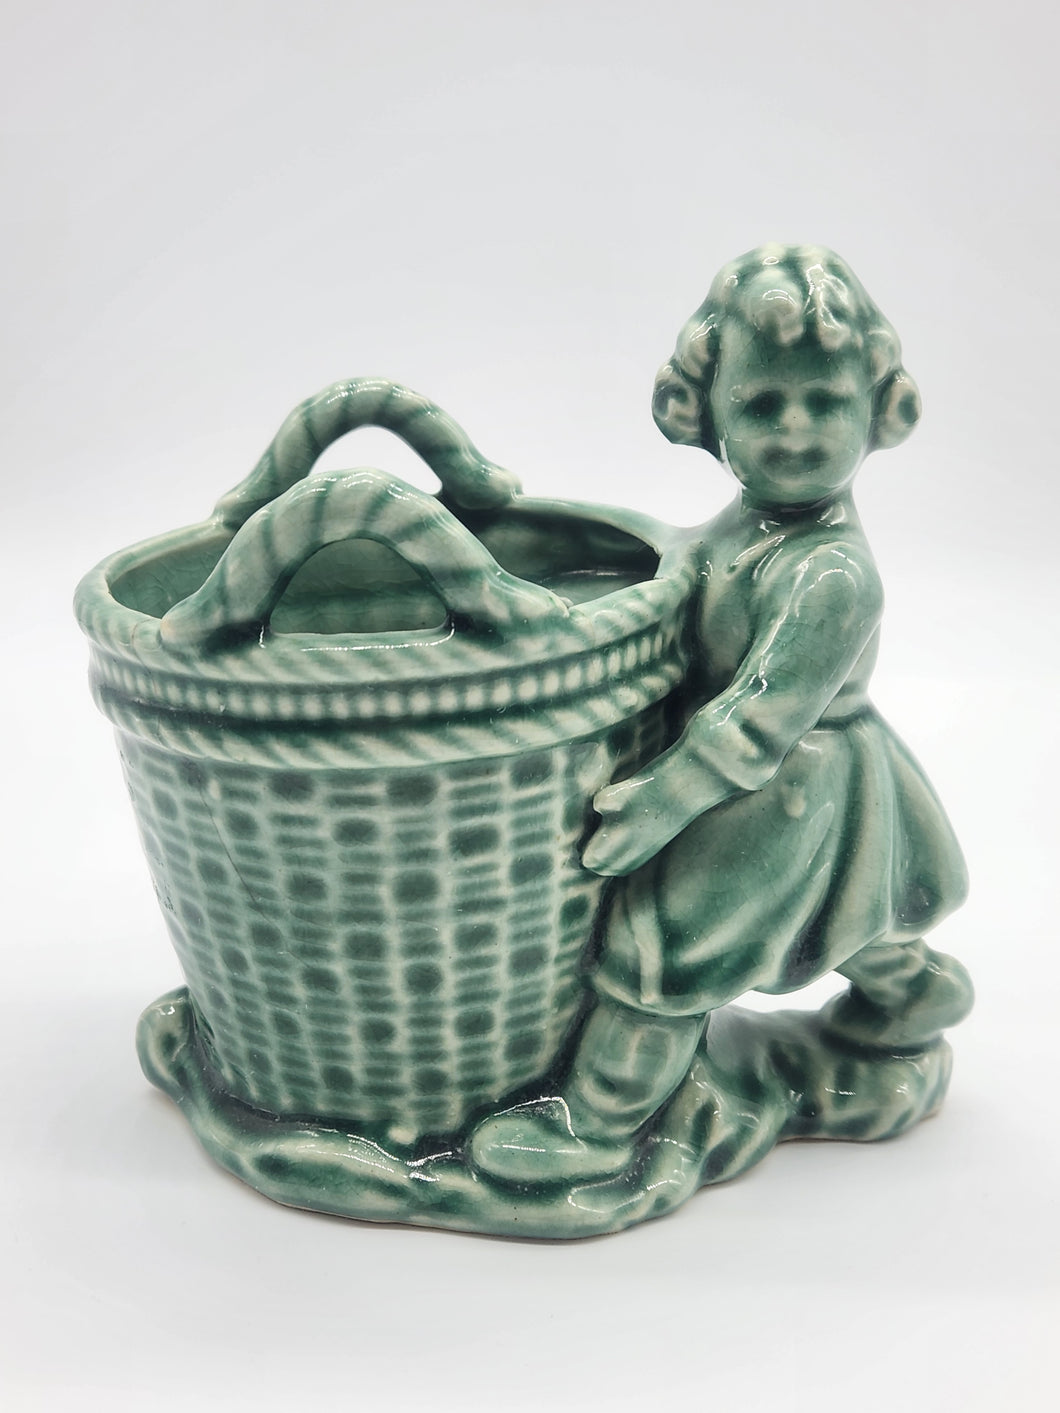 Vintage Pottery Planter, Vase, Pencil Holder Girl With A Basket